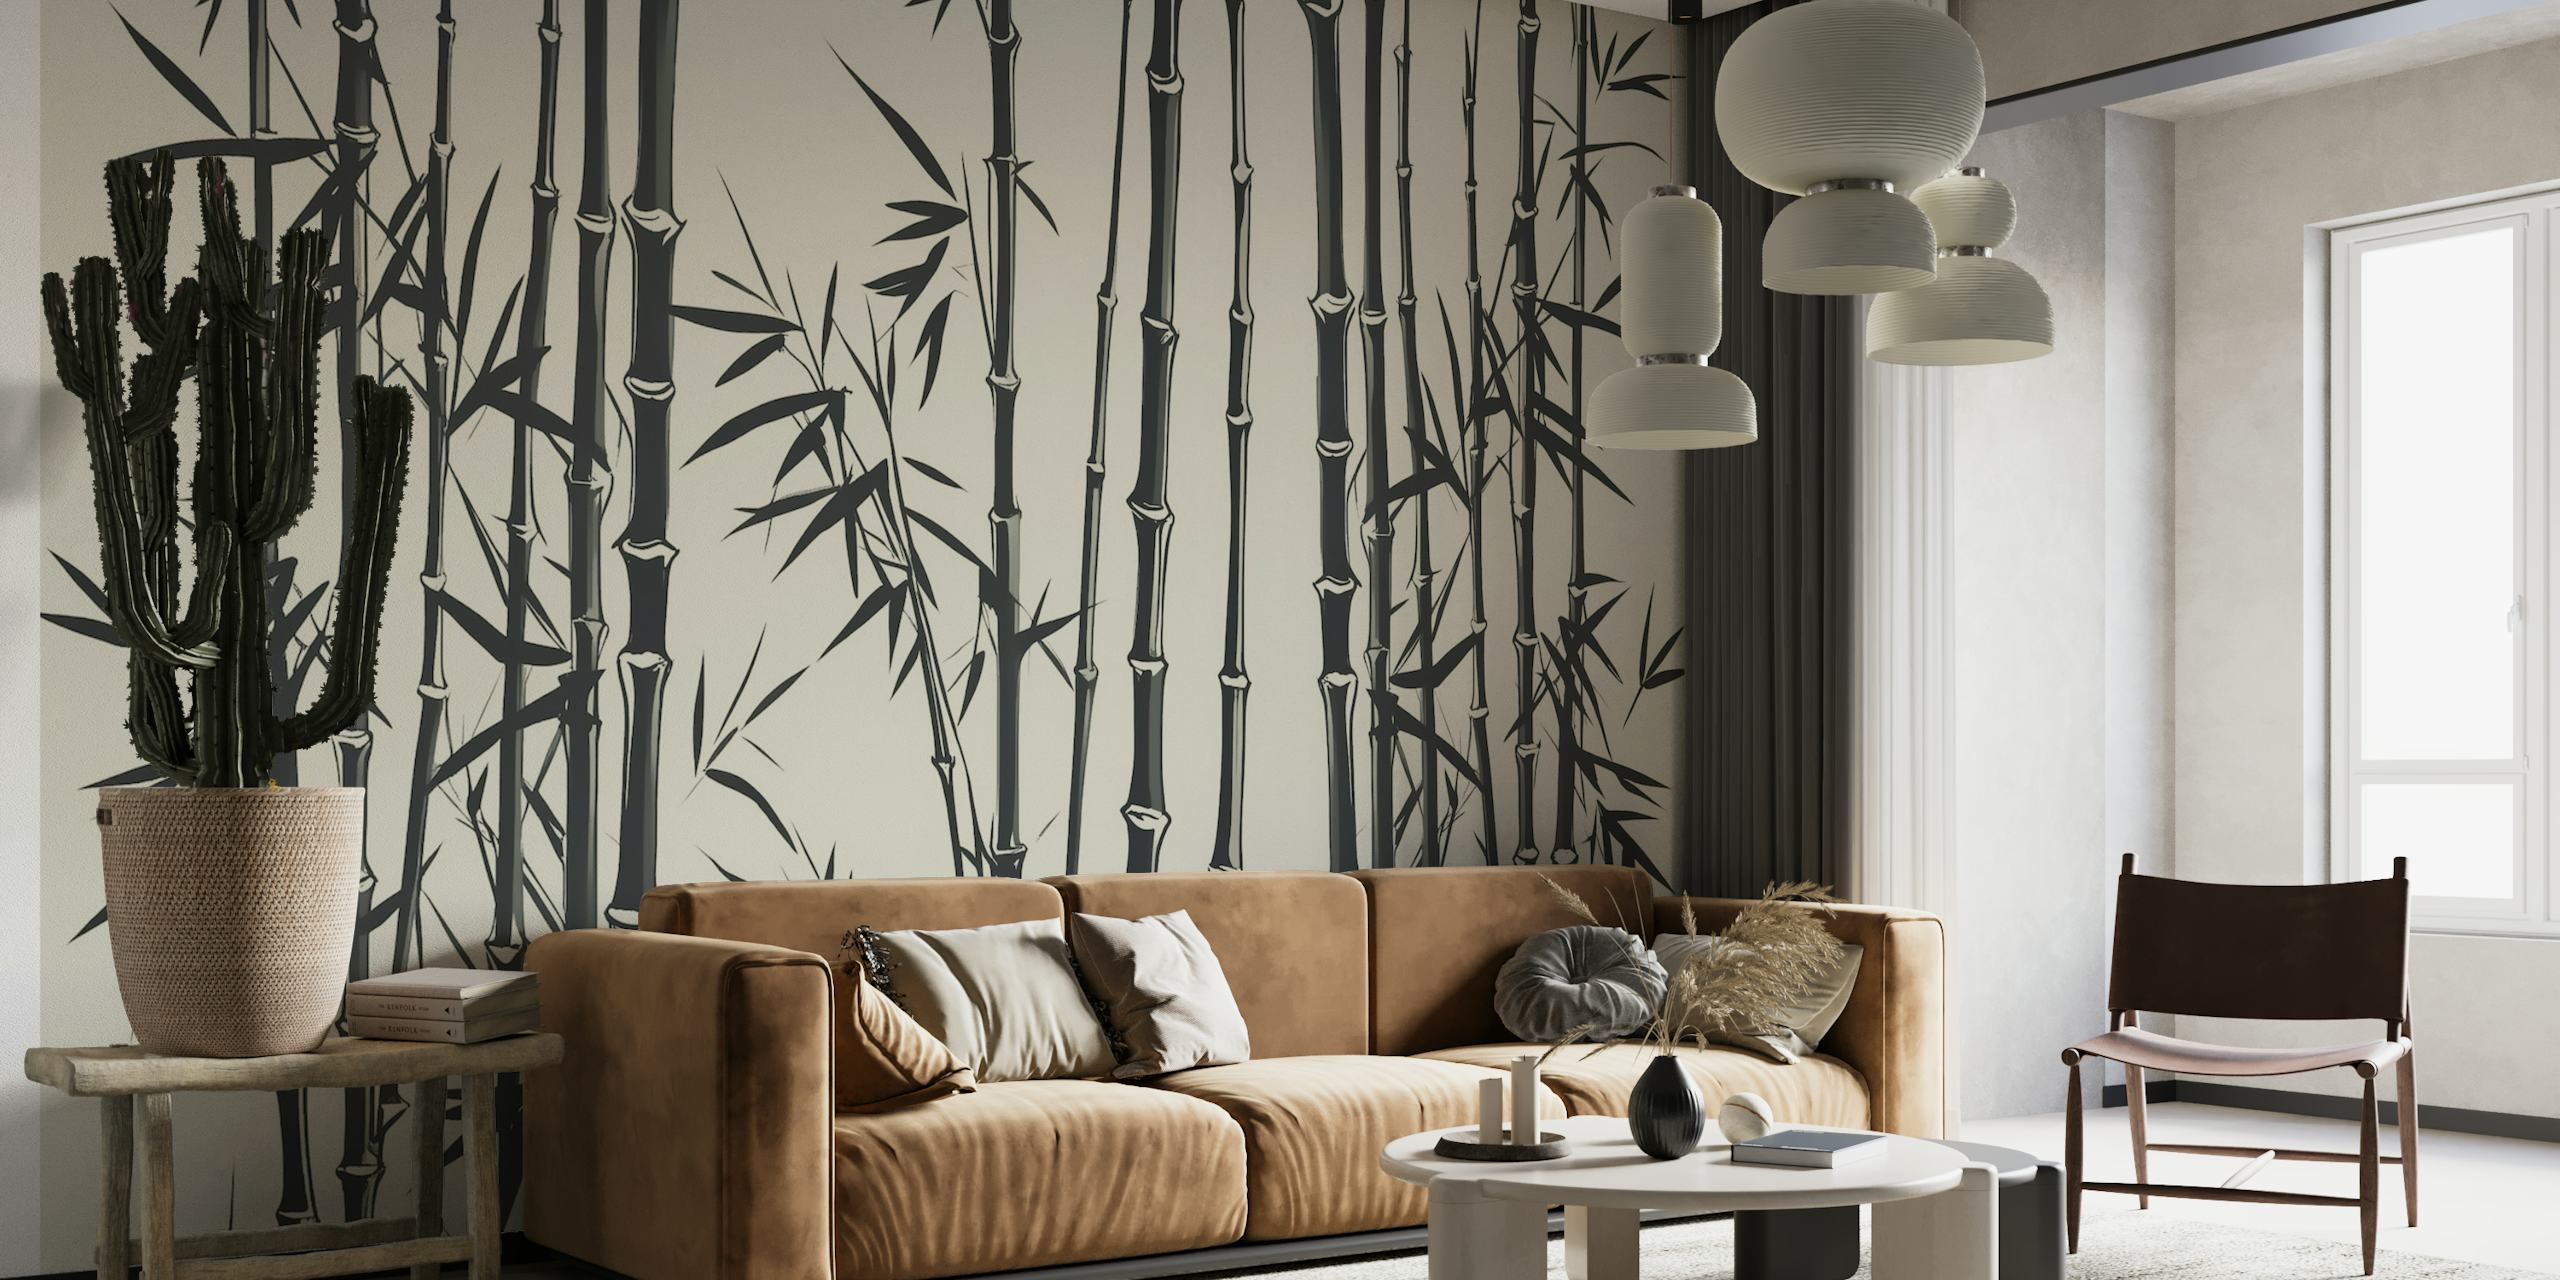 Bambusgræsvægmaleri i art deco-stil i sort og hvid på cremebaggrund